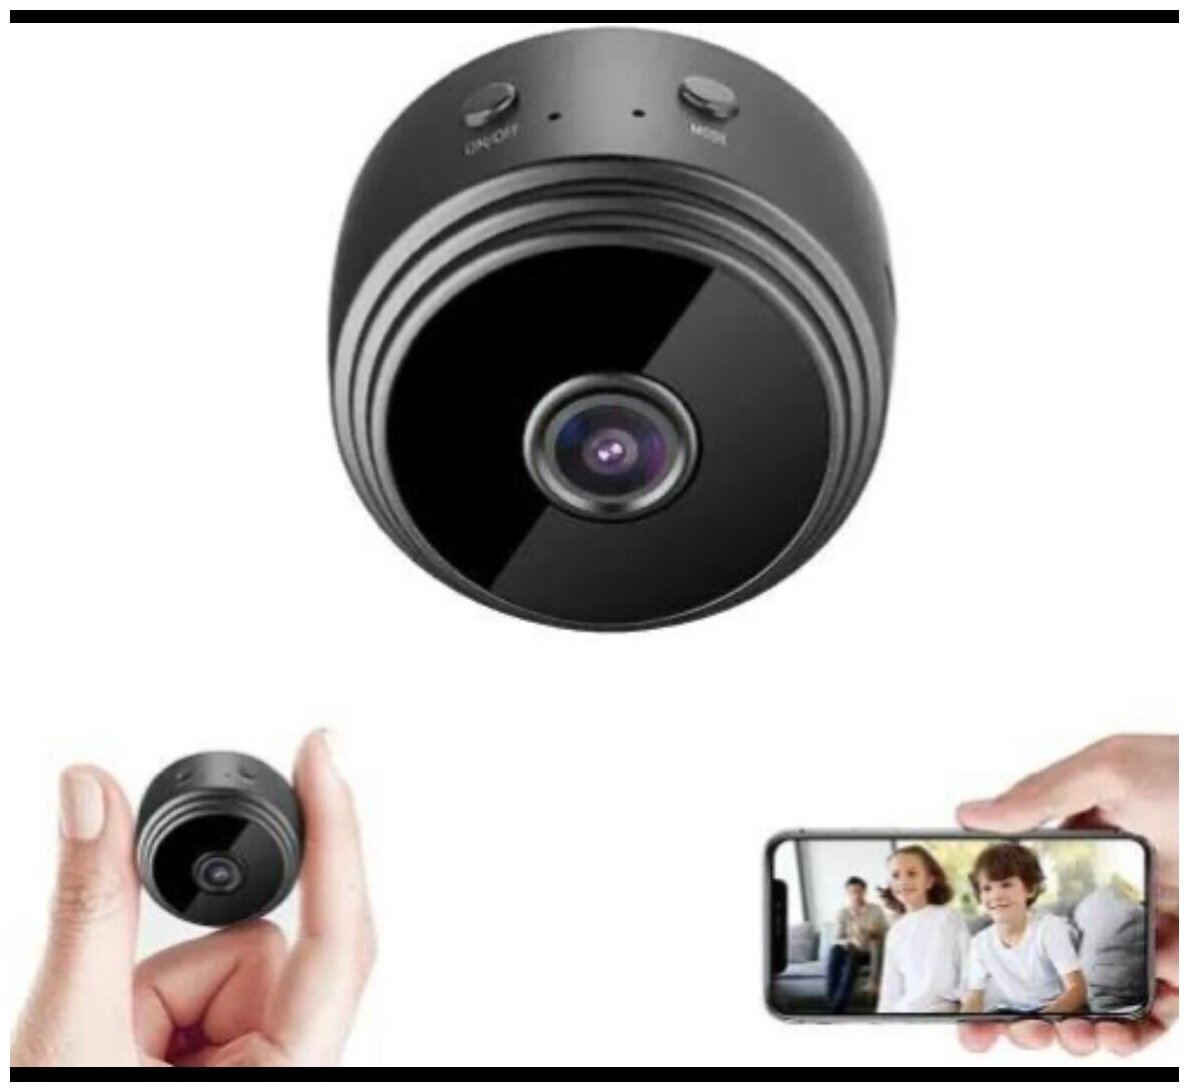 Скрытая мини камера Wi-Fi видеонаблюдения с аккумулятором, датчиком движения и ночным видением.